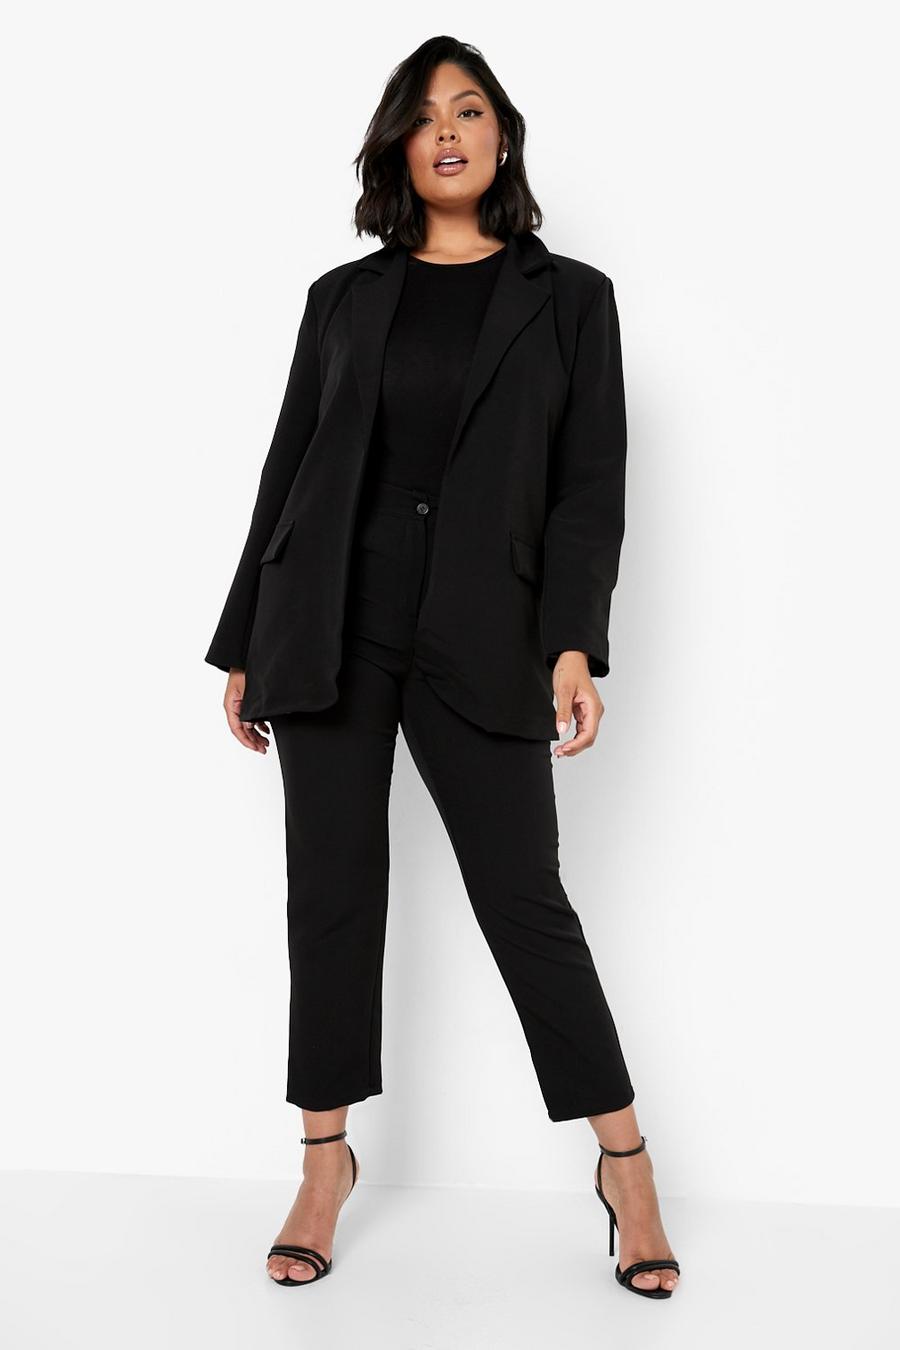 Plus Size HBIC Pant Suit - Black – Curvy Sense